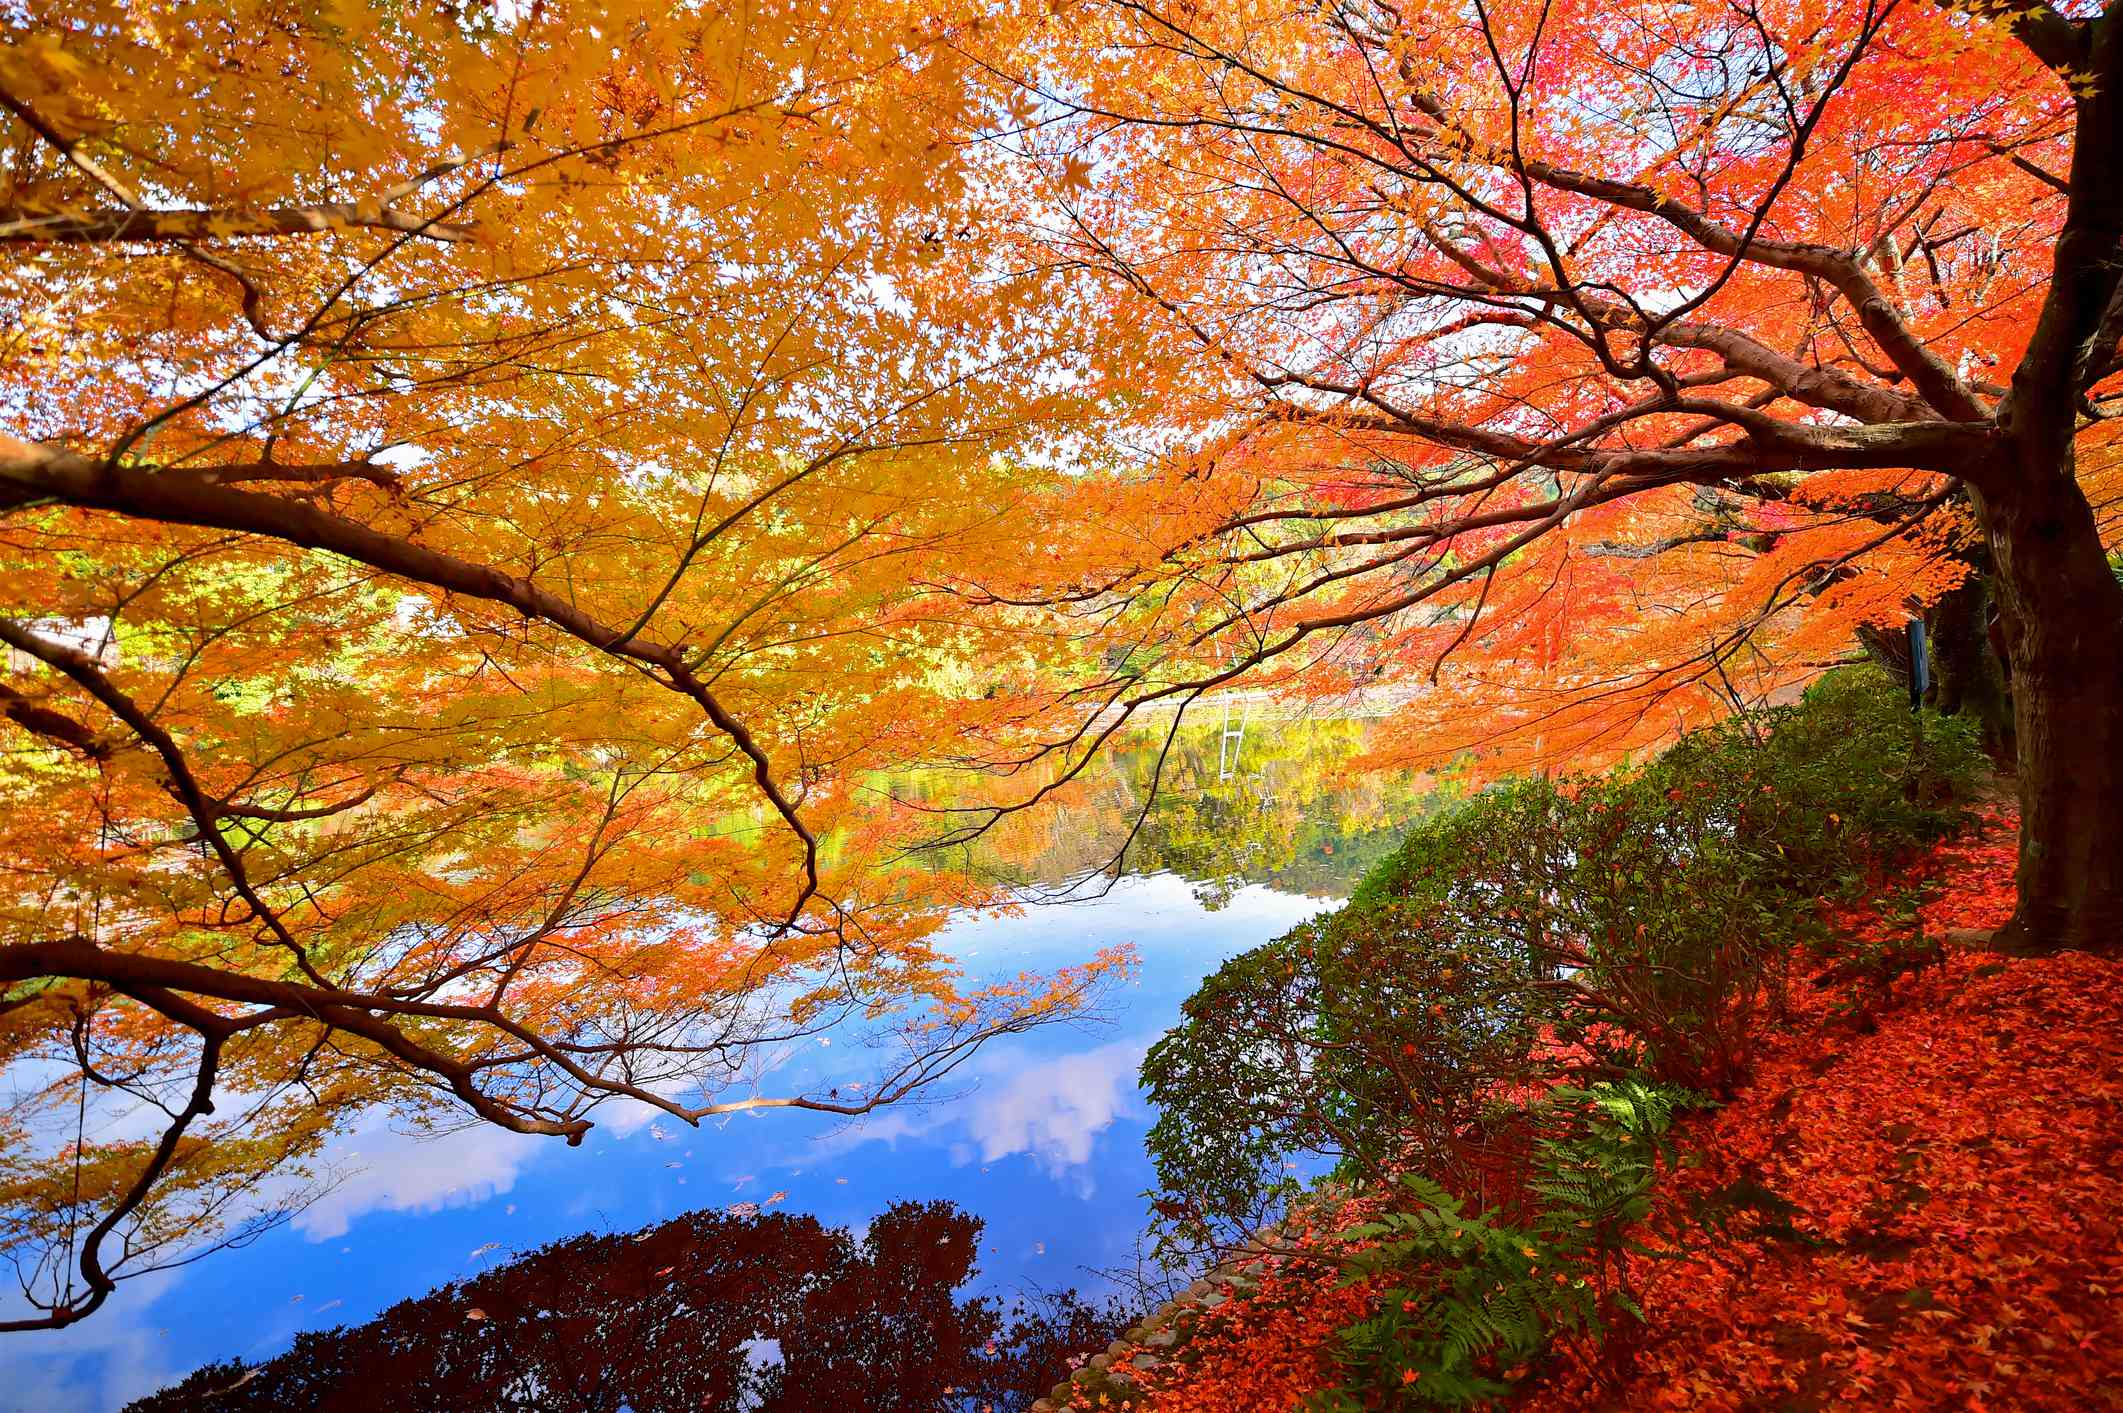 一棵树的精致的橙色叶子斜靠在水面上，下面的红花和绿灌木倒映在水中